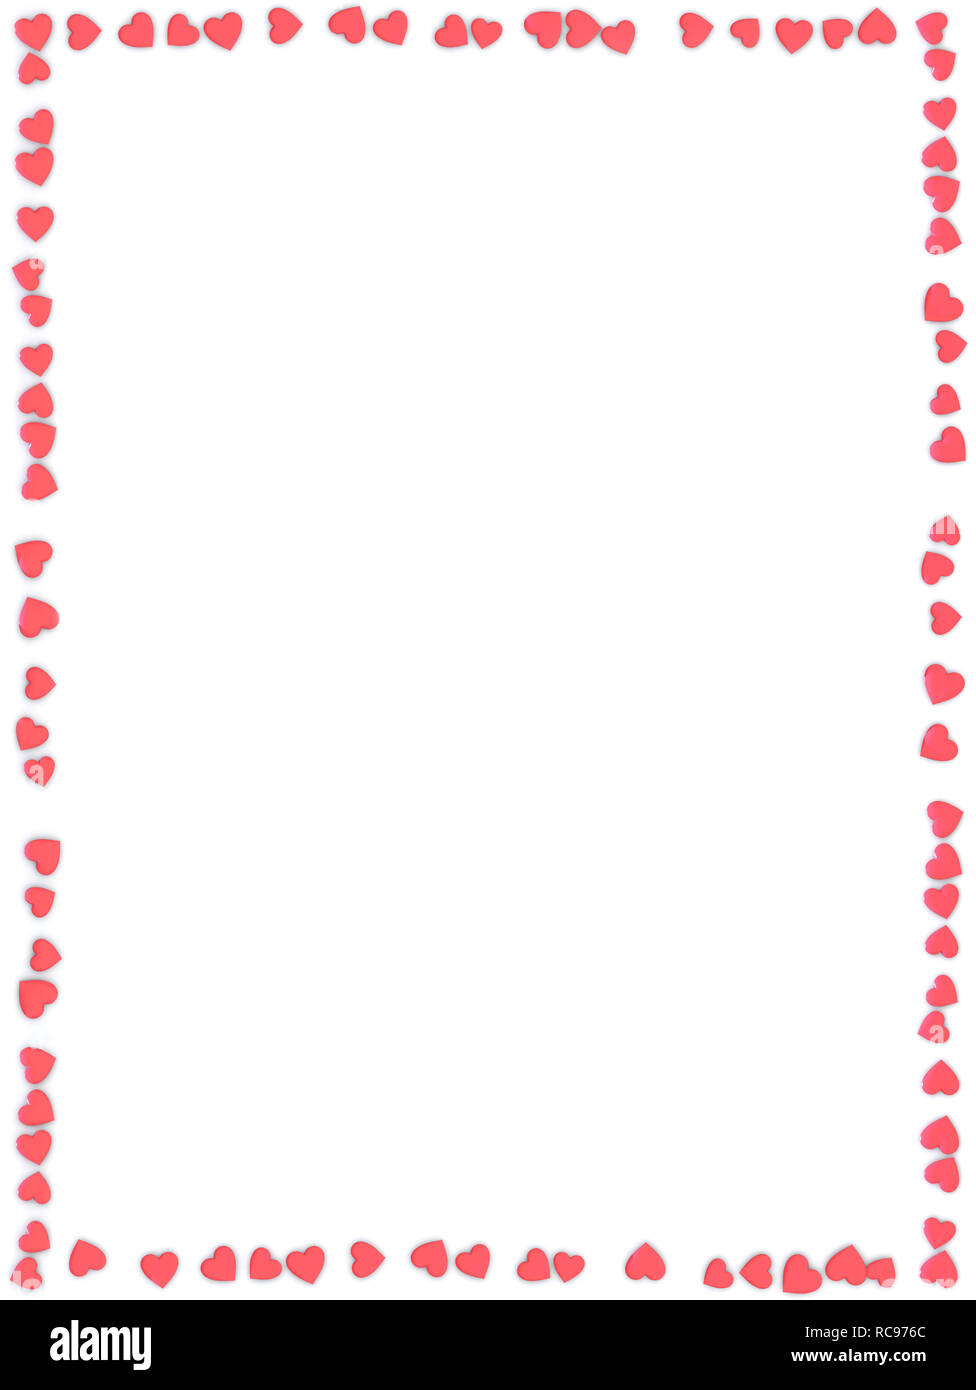 Valentinstag abstrakten 3D-Hintergrund Rahmen aus kleinen roten Herzen auf  weißem Hintergrund Stockfotografie - Alamy